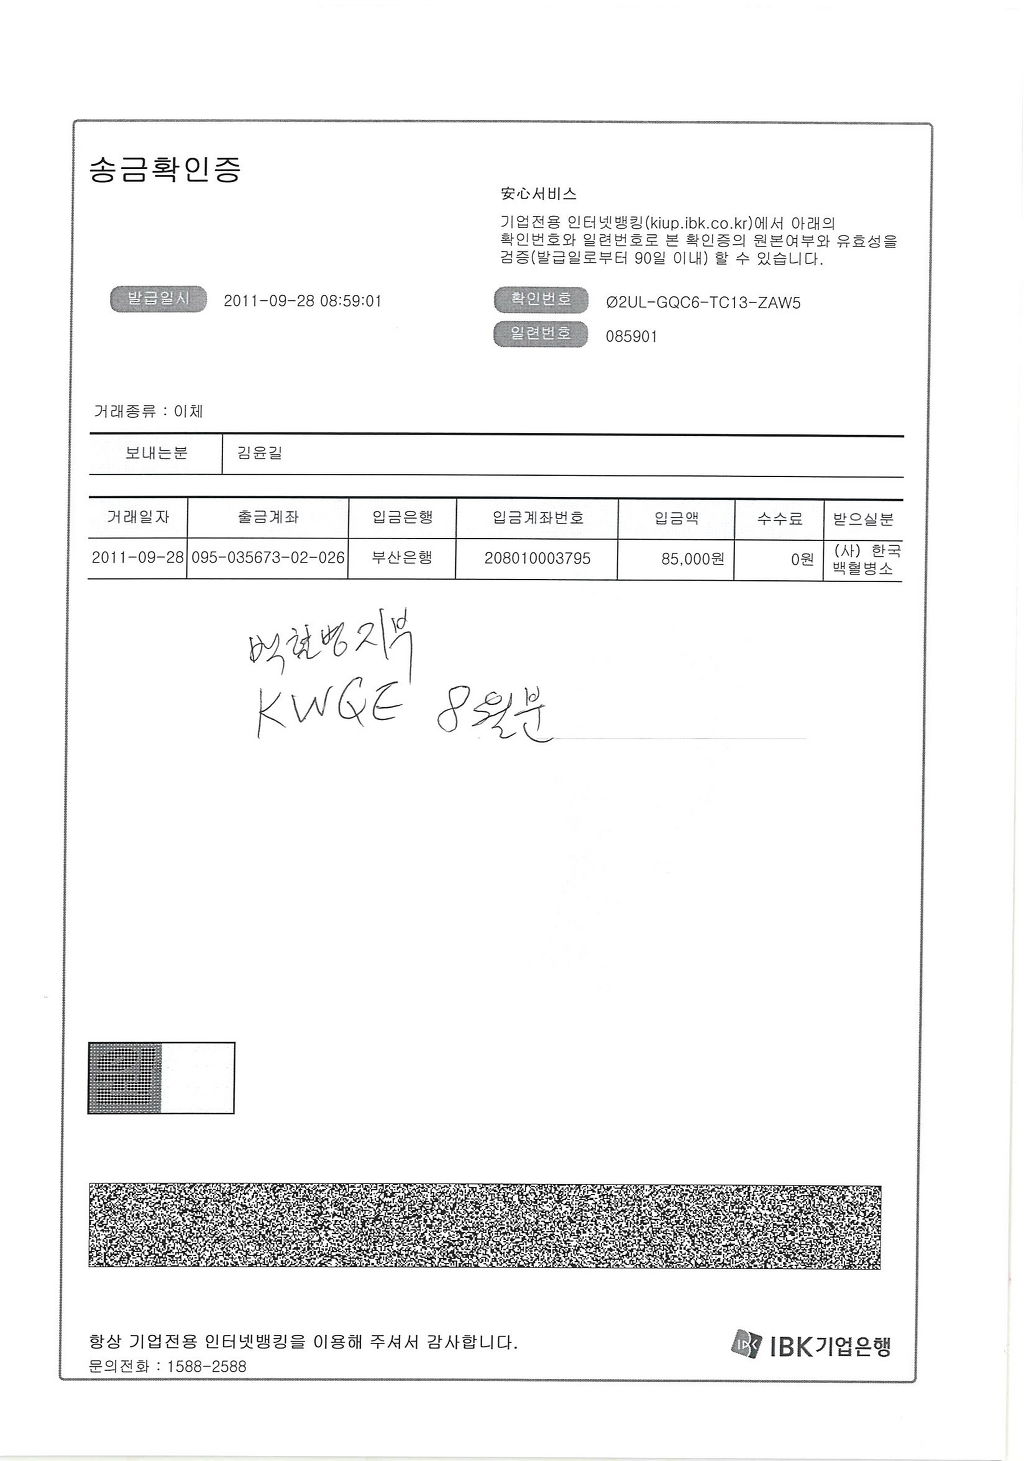  첨부파일  - KWQE-8~1.JPG